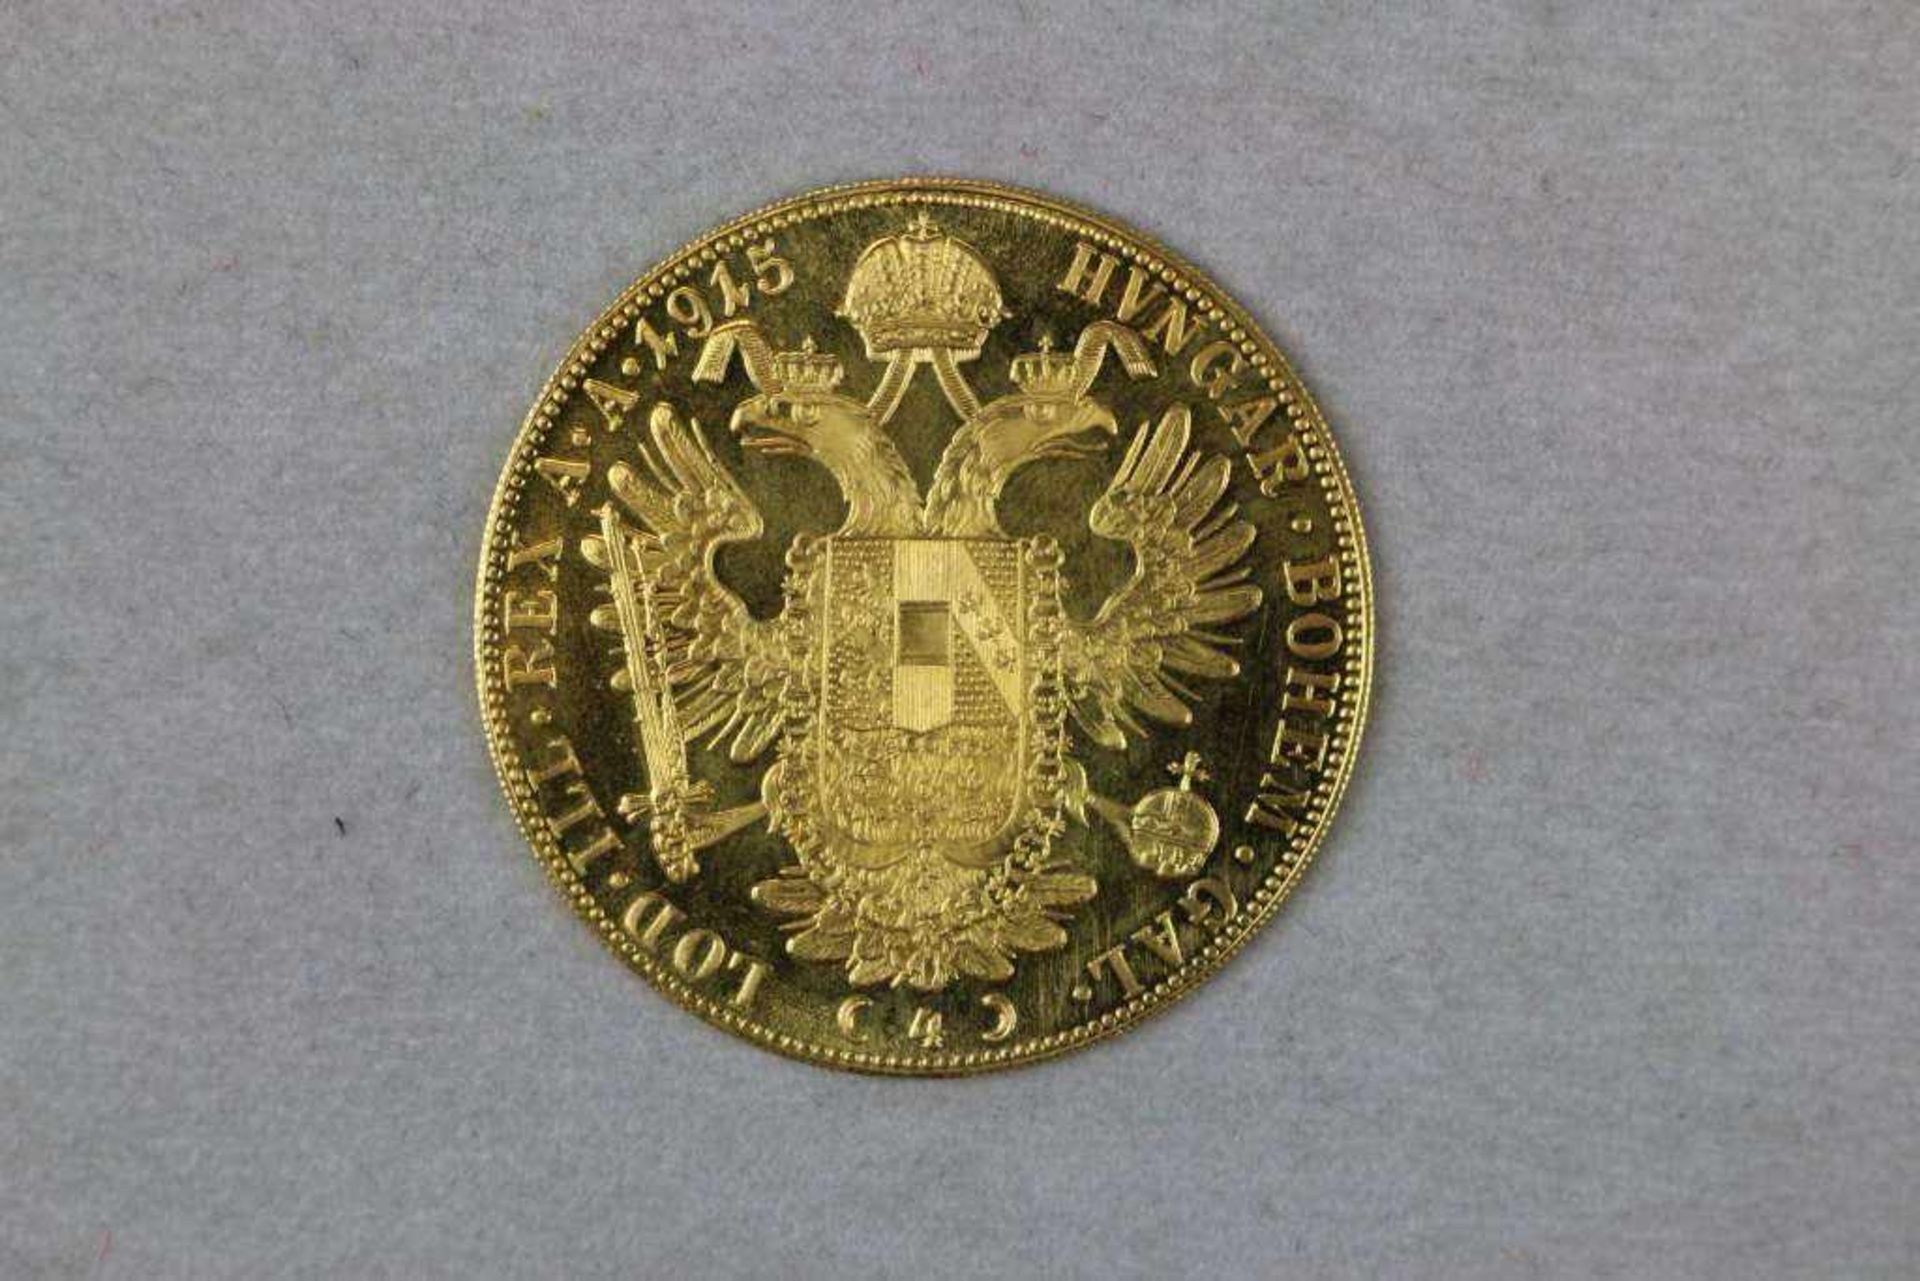 Goldmünze 4 Dukaten Österreich Kaiser Franz Joseph Golddukat 1915, Bruttogewicht: 13,963 g, - Image 2 of 2